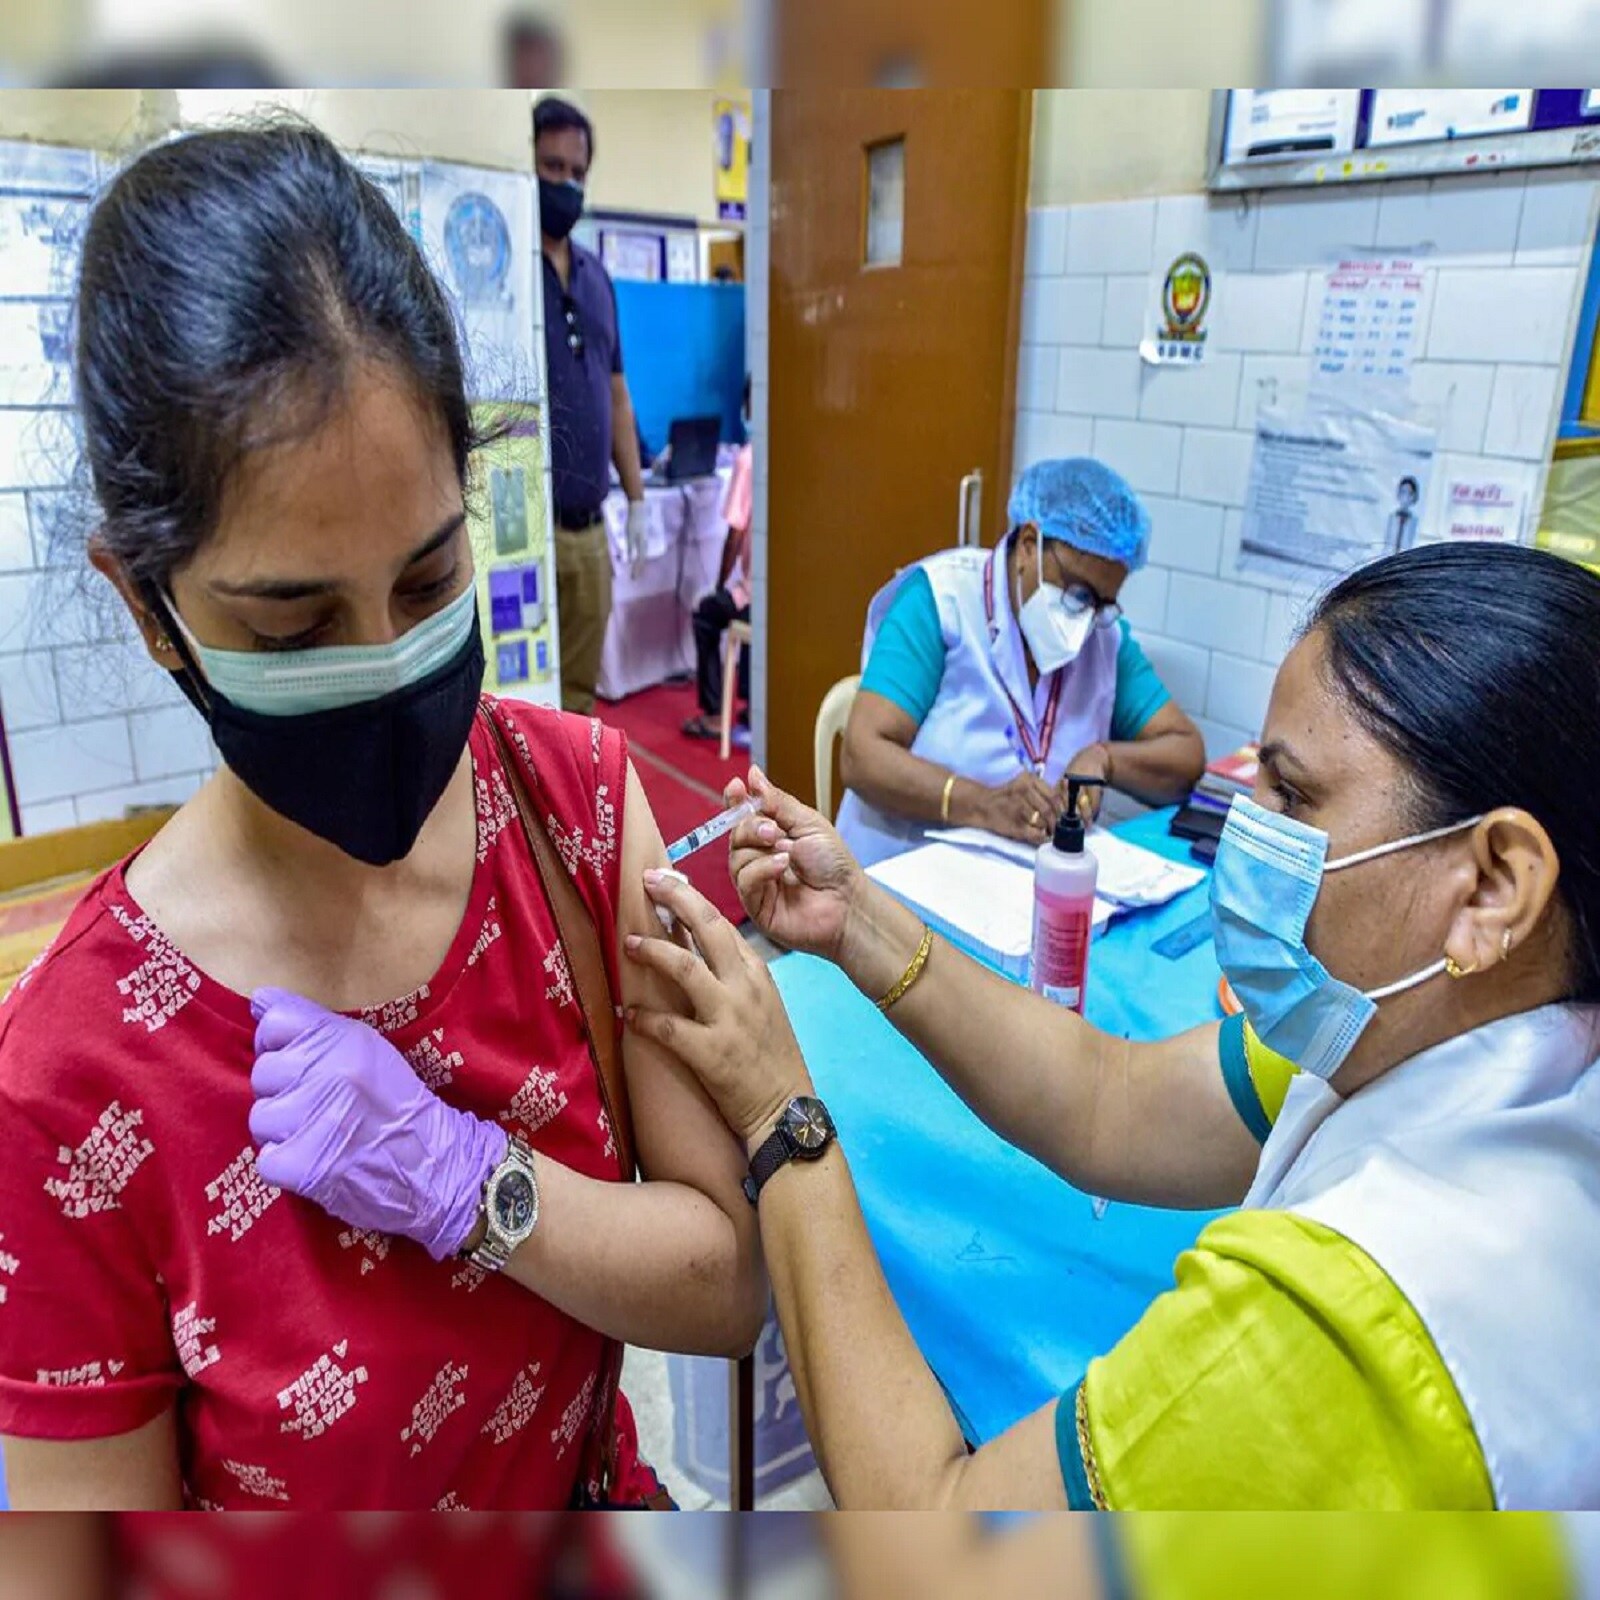  ગુજરાતમાં કોરોના રસી અંગે વાત કરીએ તો બુધવારે સાંજના પાંચ વાગ્યાથી આજે ગુરુવારે સાંજના ચાર વાગ્યા સુધીમાં ગુજરાતભરમાં કુલ 421081 કોરોના ડોઝ આપવમાં આવ્યા છે. ત્યારે અત્યાર સુધીમાં કુલ 81903703 કોરોના ડોઝ આપવામાં આવ્યા છે. (પ્રતિકાત્મક તસવીર)